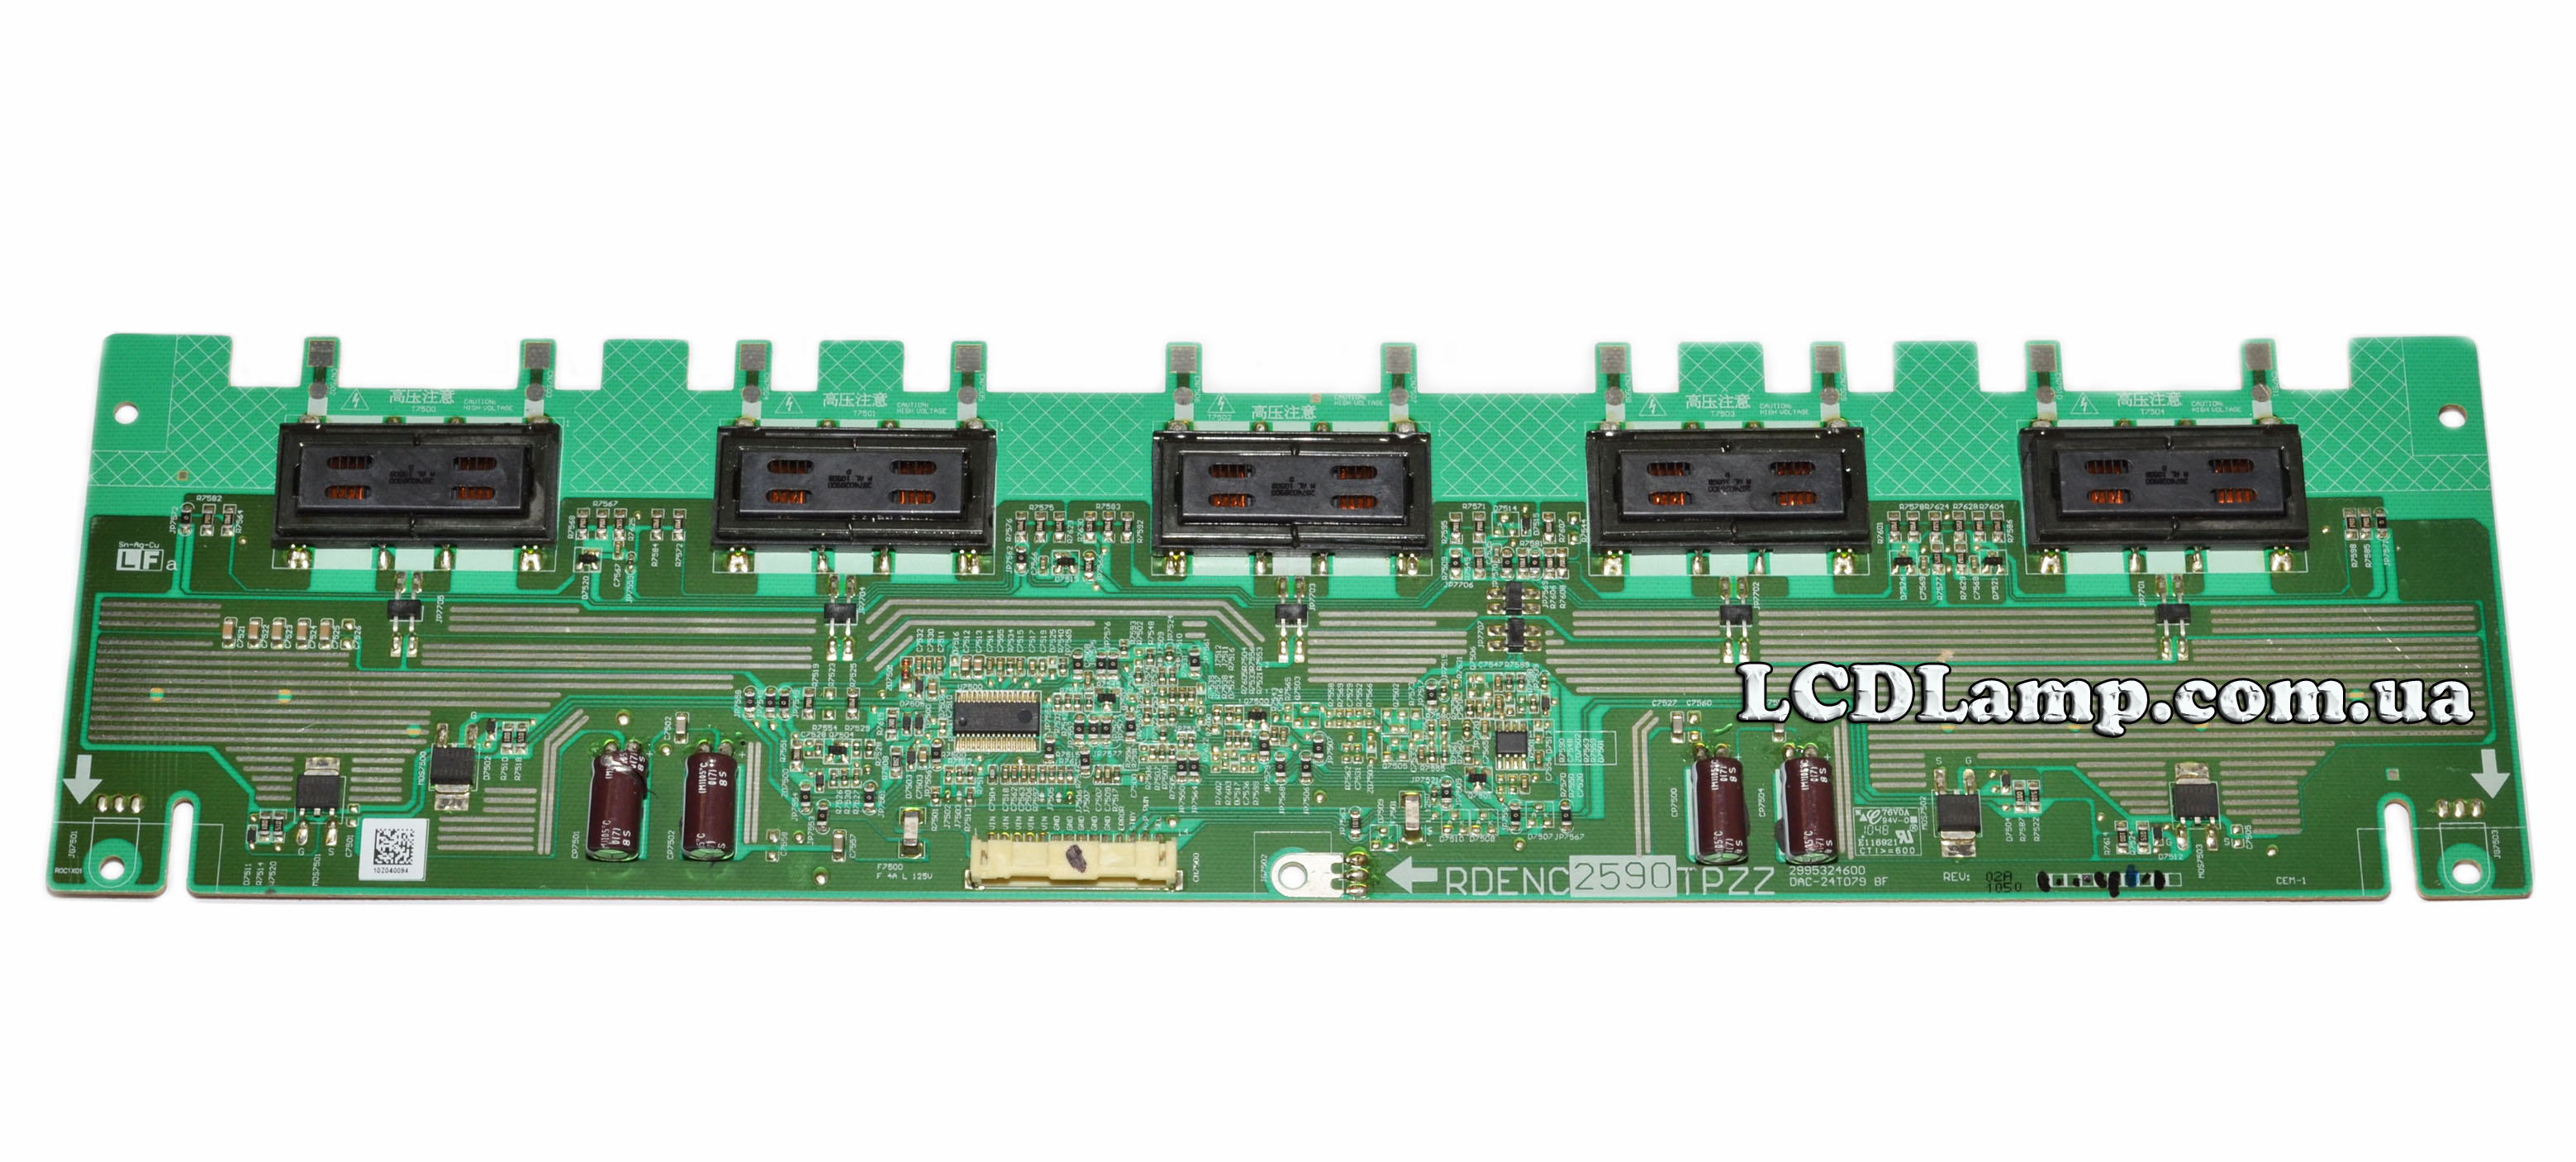 Плата инвертора LCD телевизора DAC-24T079 BF